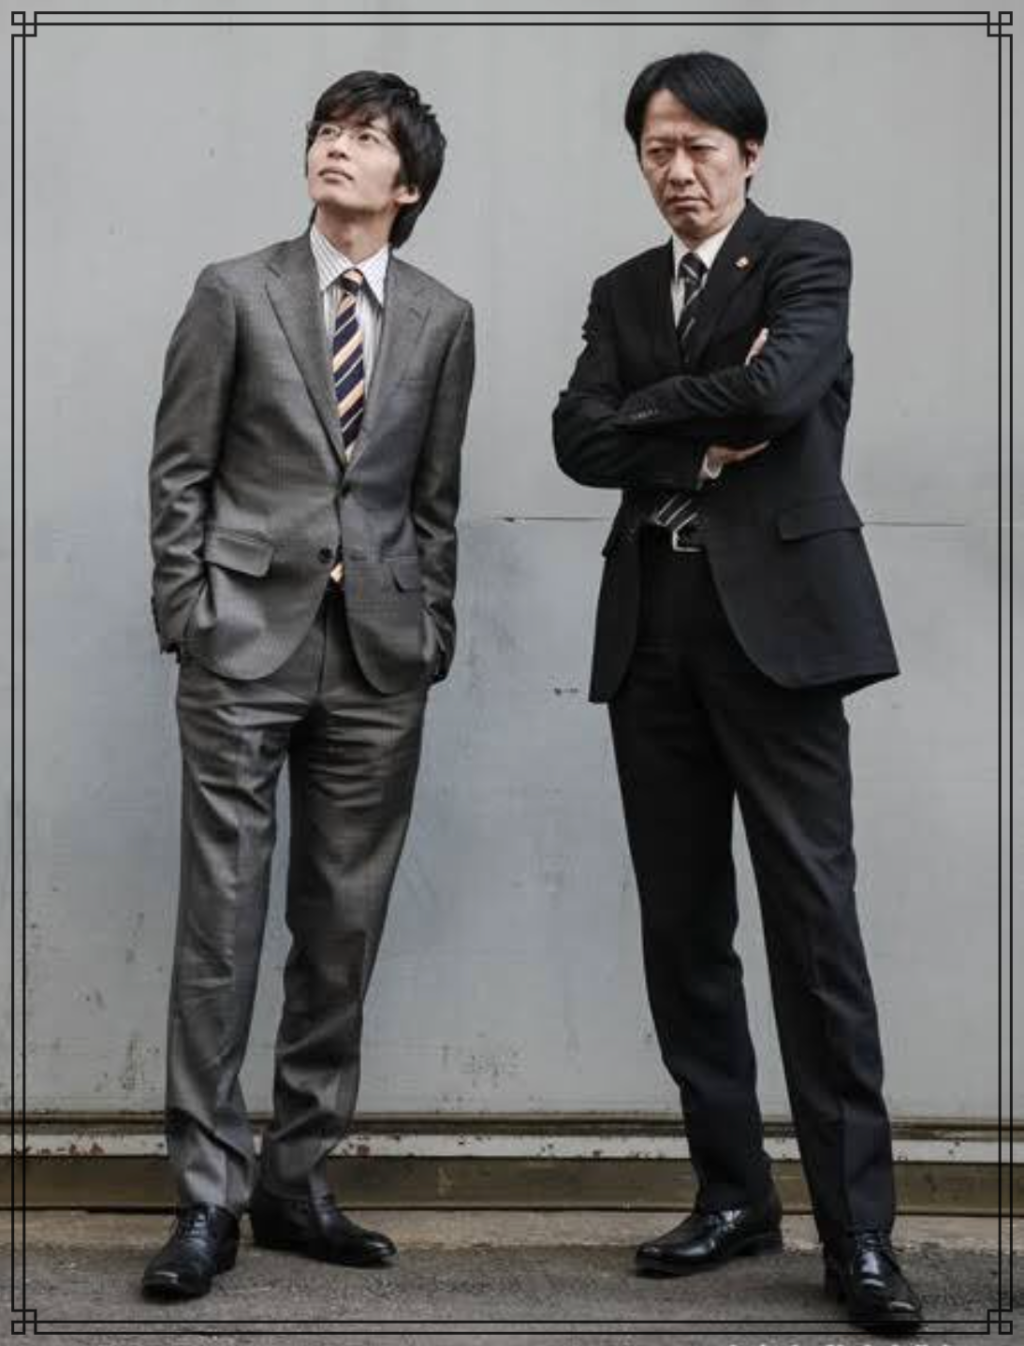 田中圭さんと川原和久さんの全身画像